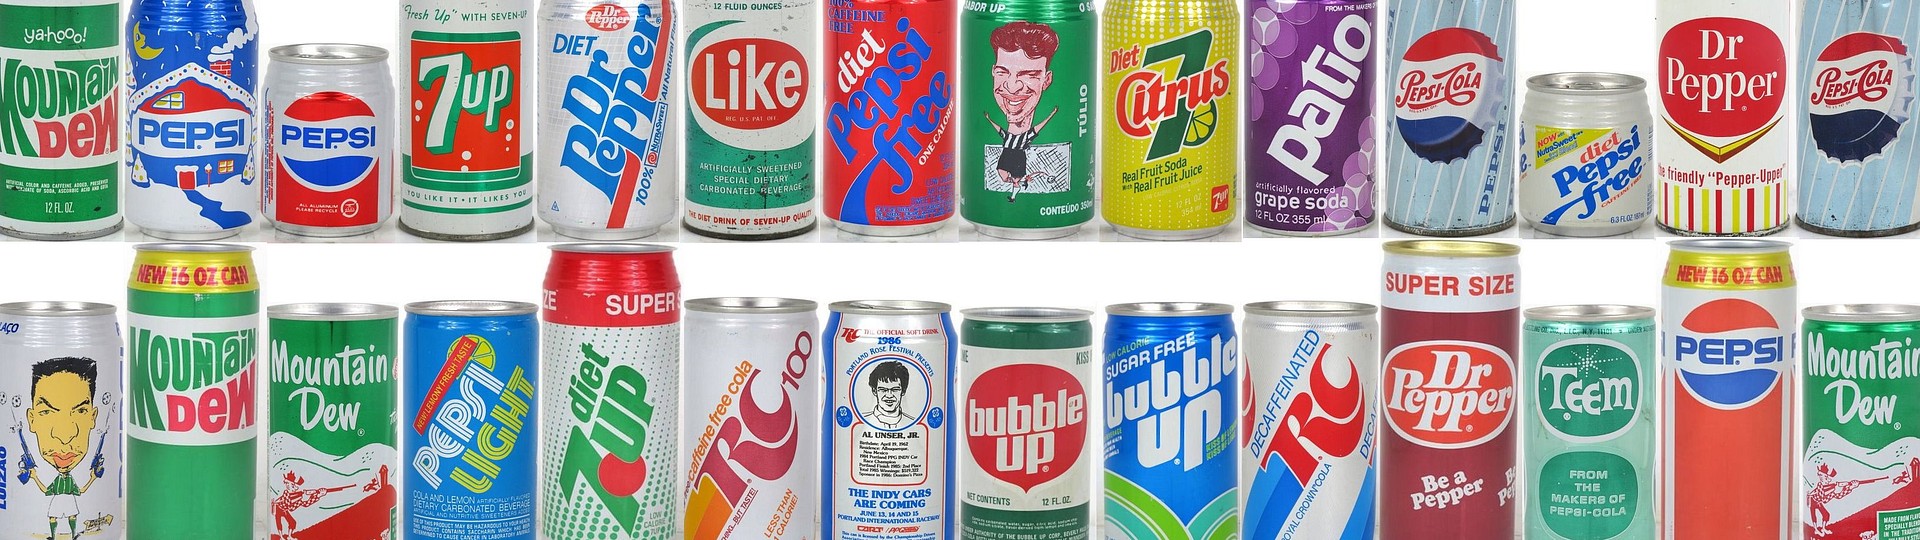 Rare Pepsi Mt. Dew Mello Yello 7up and Dr Pepper Soda Cans by TavernTrove